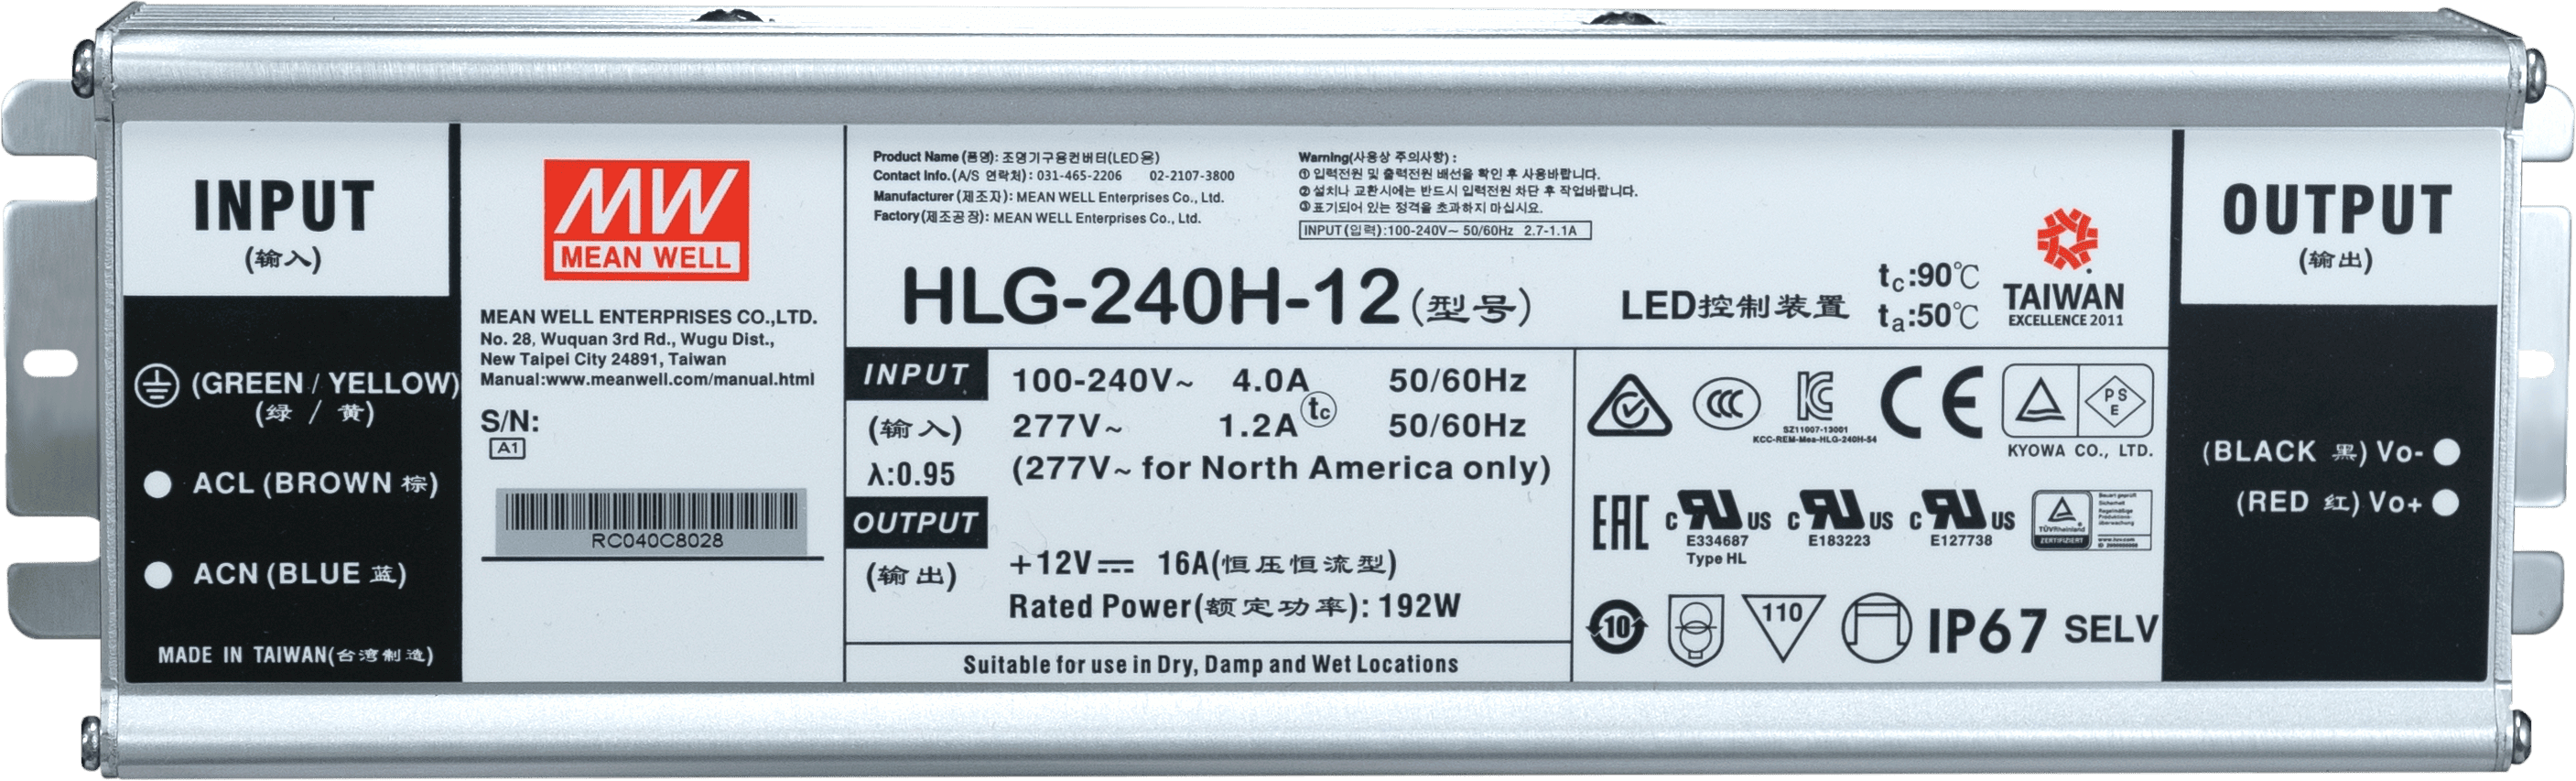 HLG-240H-12